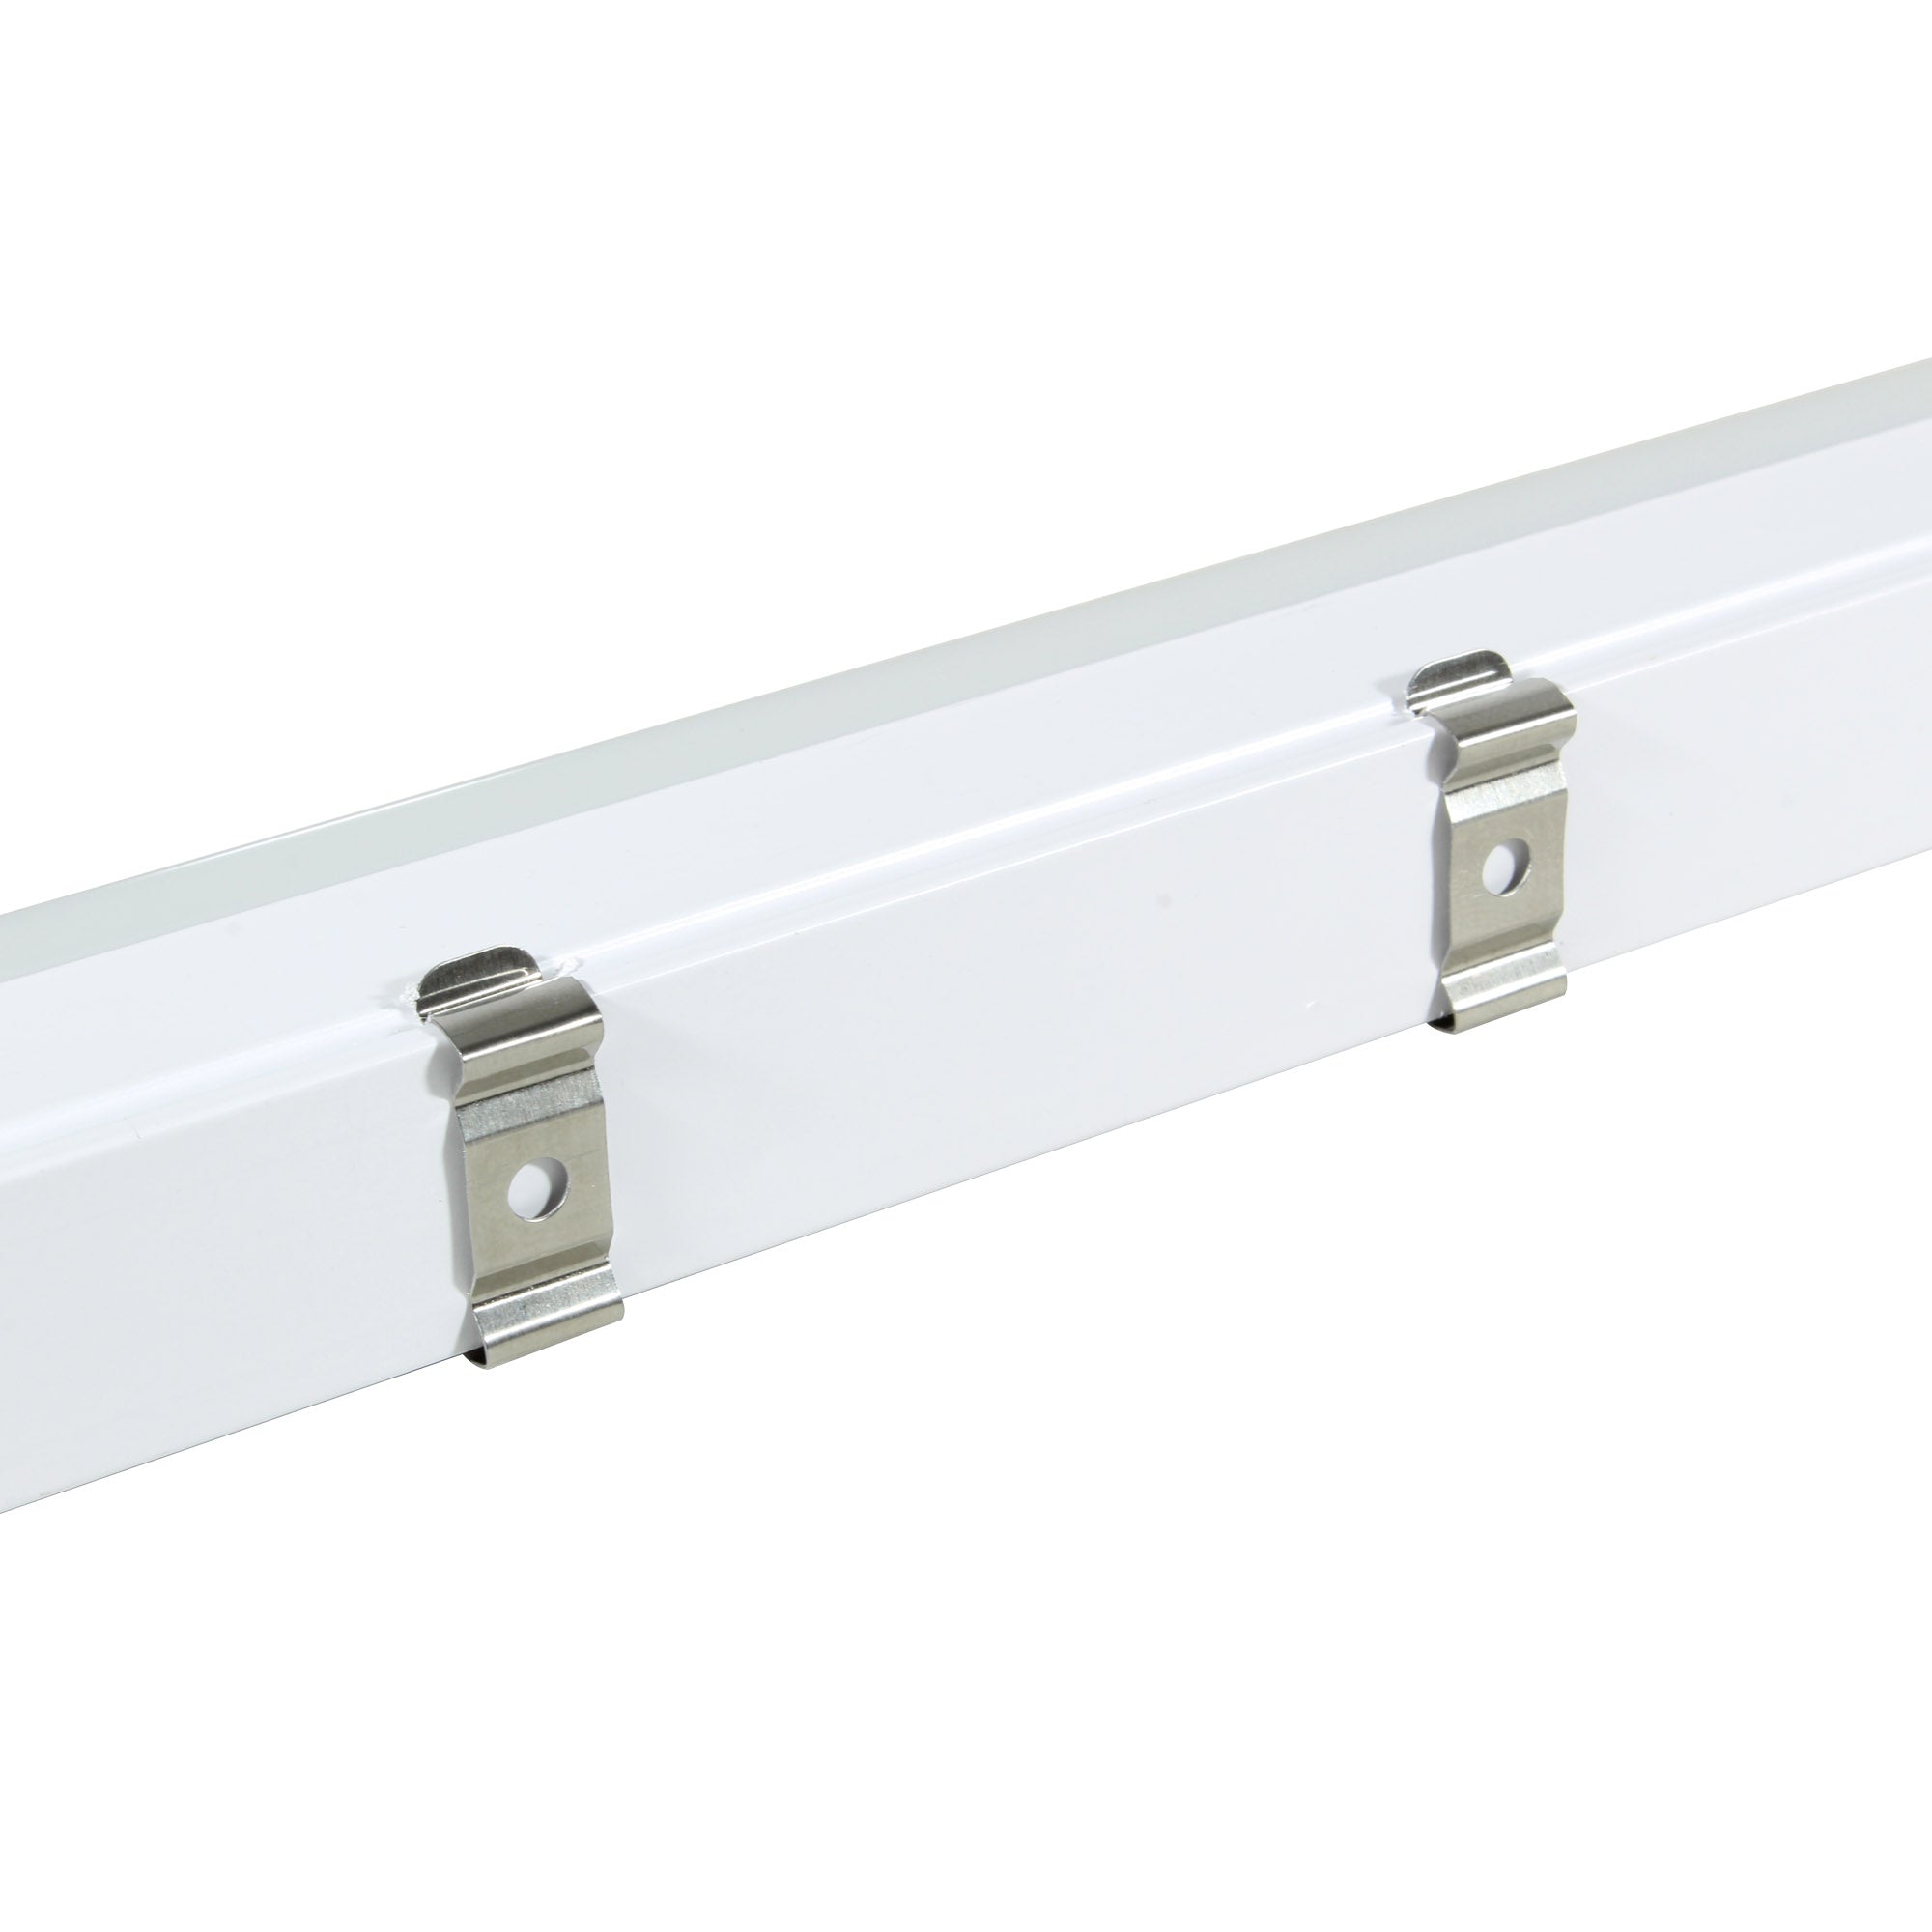 Lámpara Illux LED estilo regleta de sobreponer en techo Atenuable blanco interconectable 14 W, TL-1510.BDIM